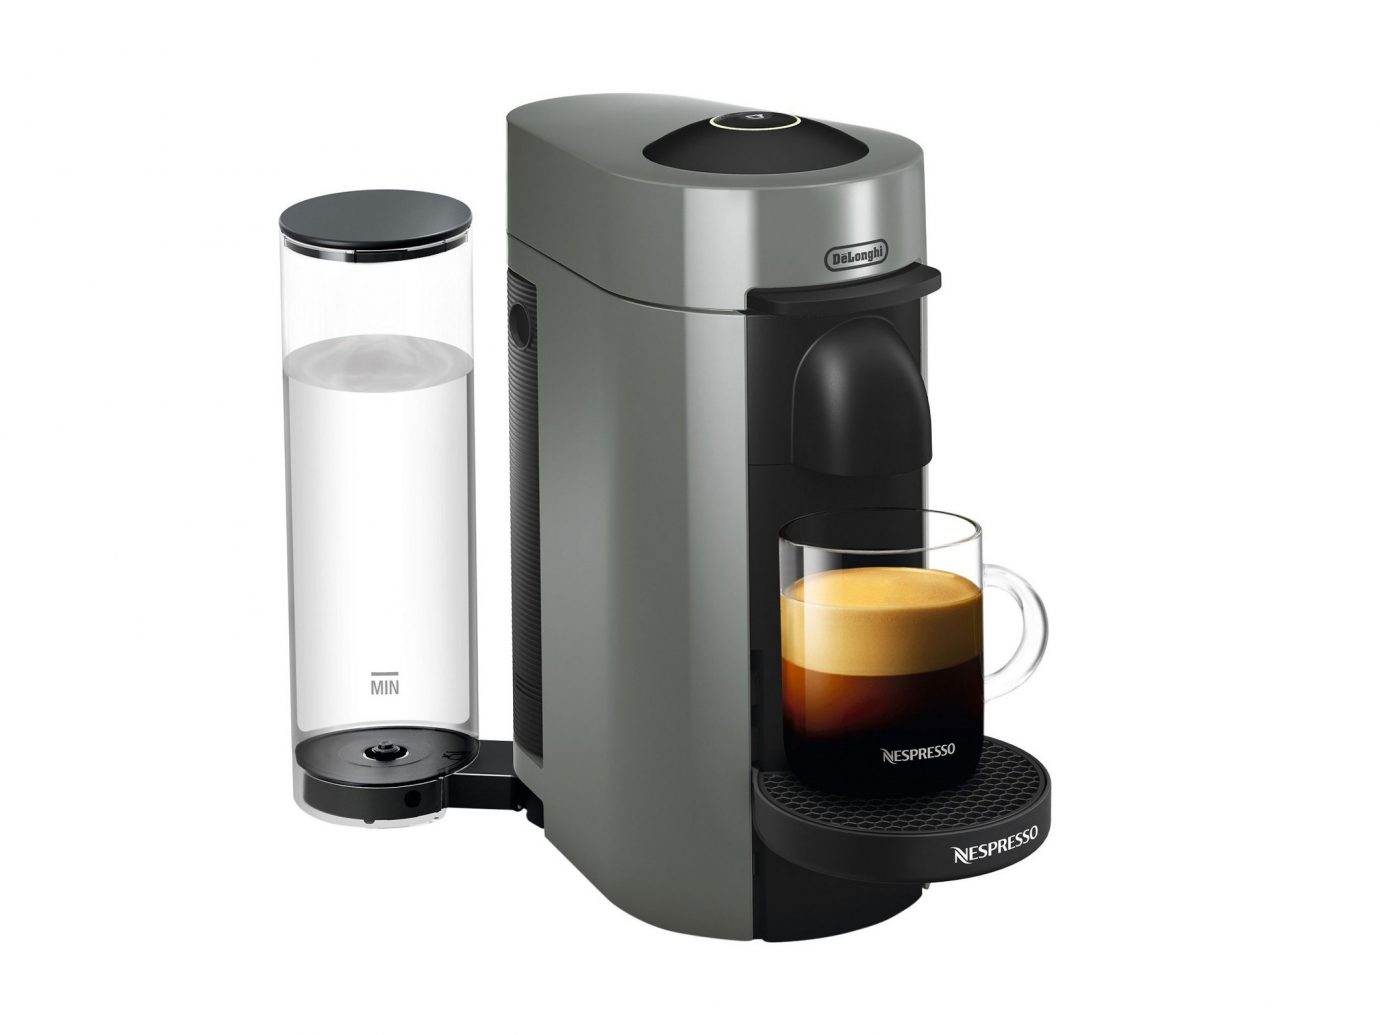 Nespresso Vertuo Plus Coffee and Espresso Machine